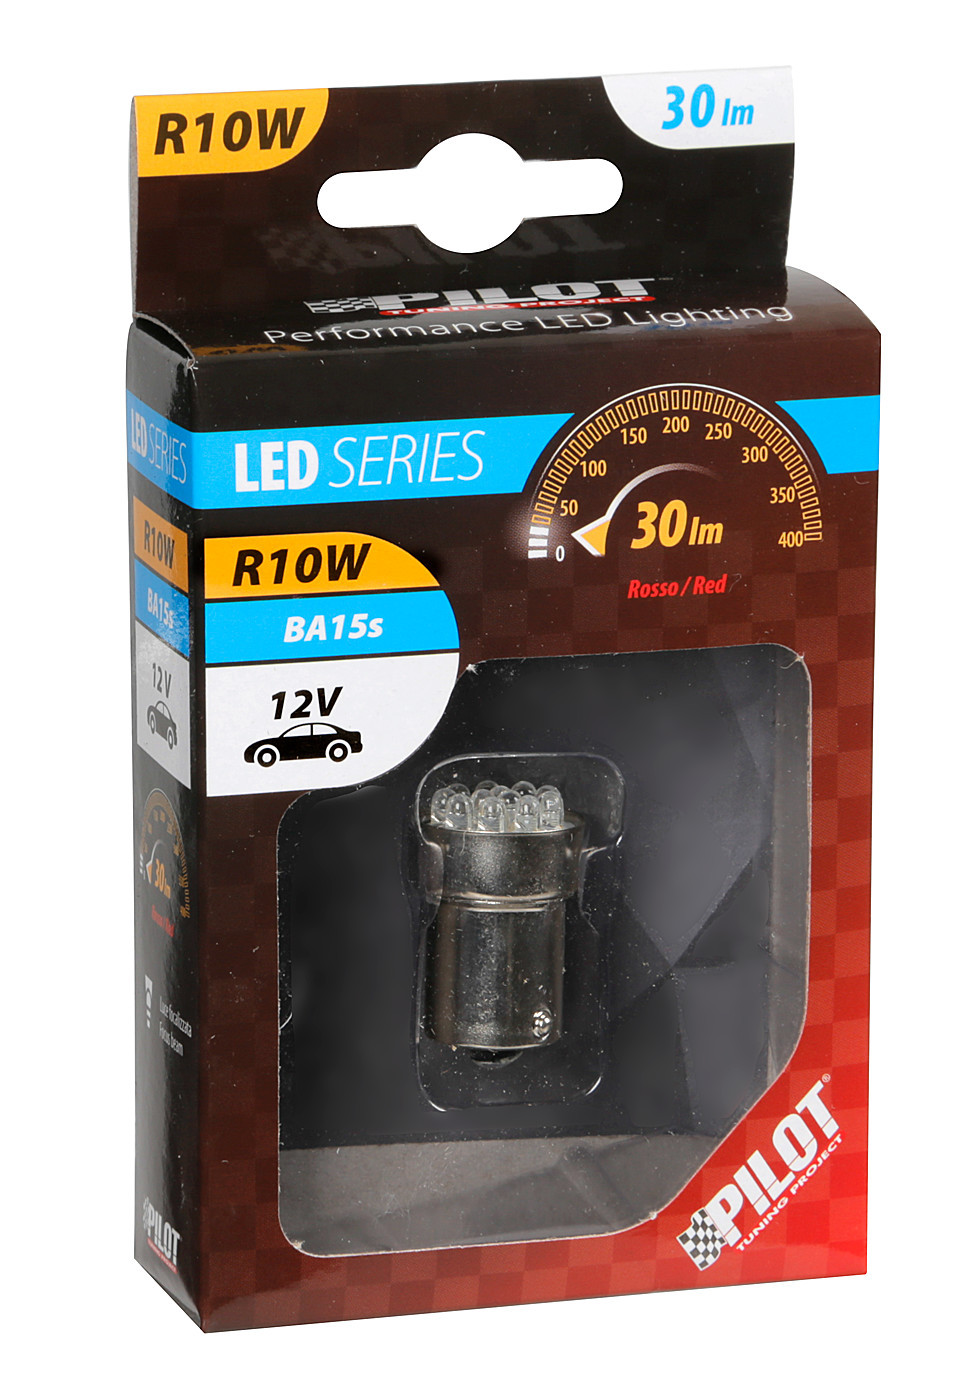 12V Multi-Led Lamp 11 Led - (R10W) - BA15s - 1 pcs - D/Blister - Red thumb